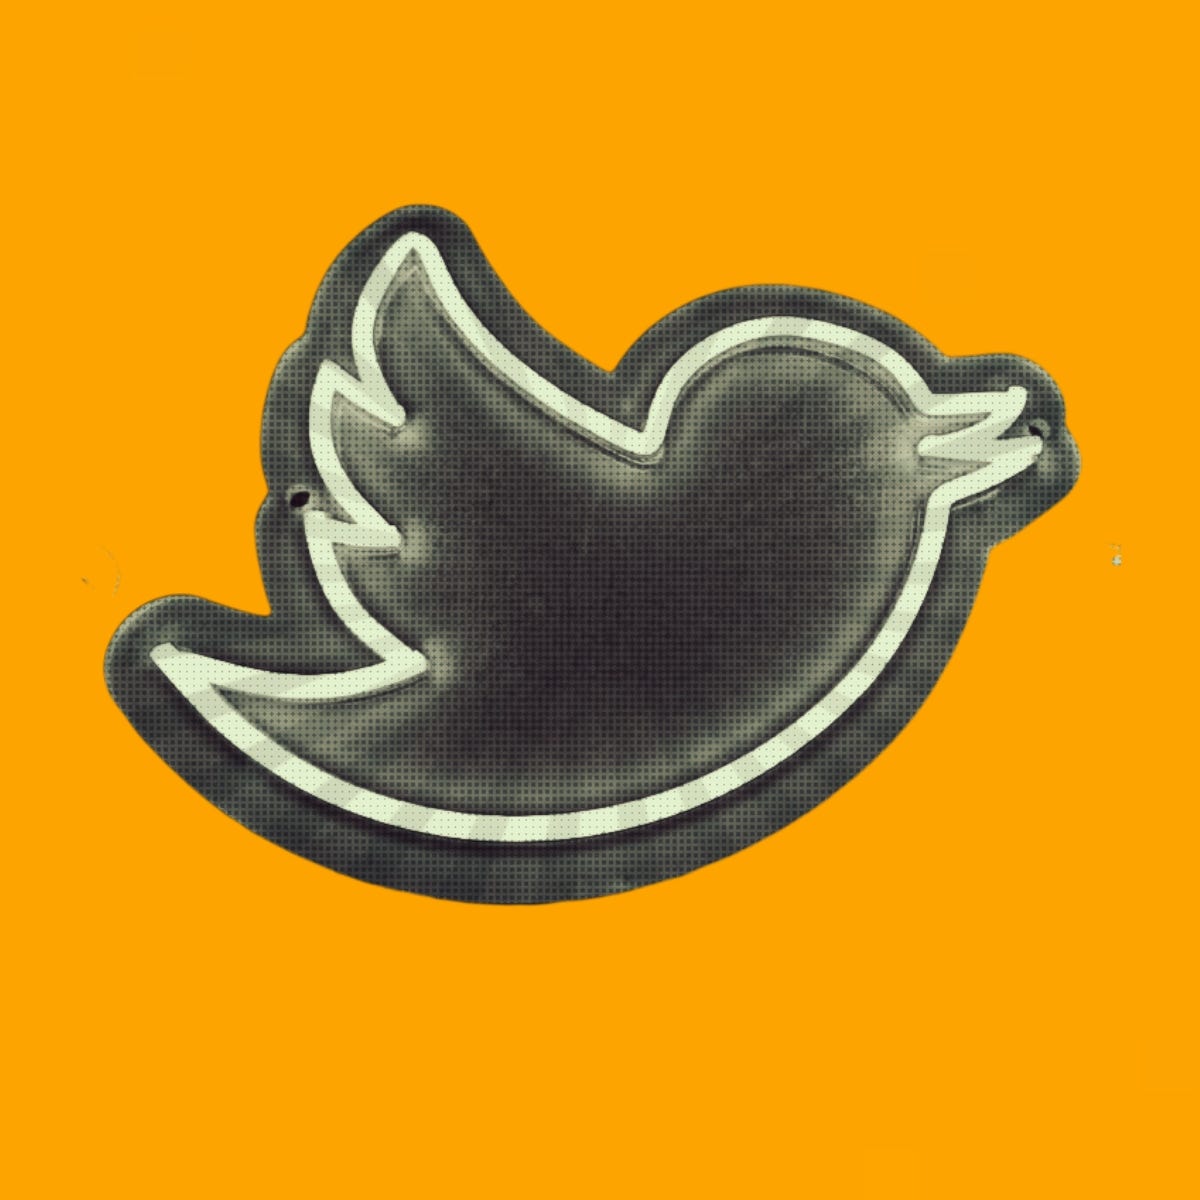 Illustration of the Twitter logo.